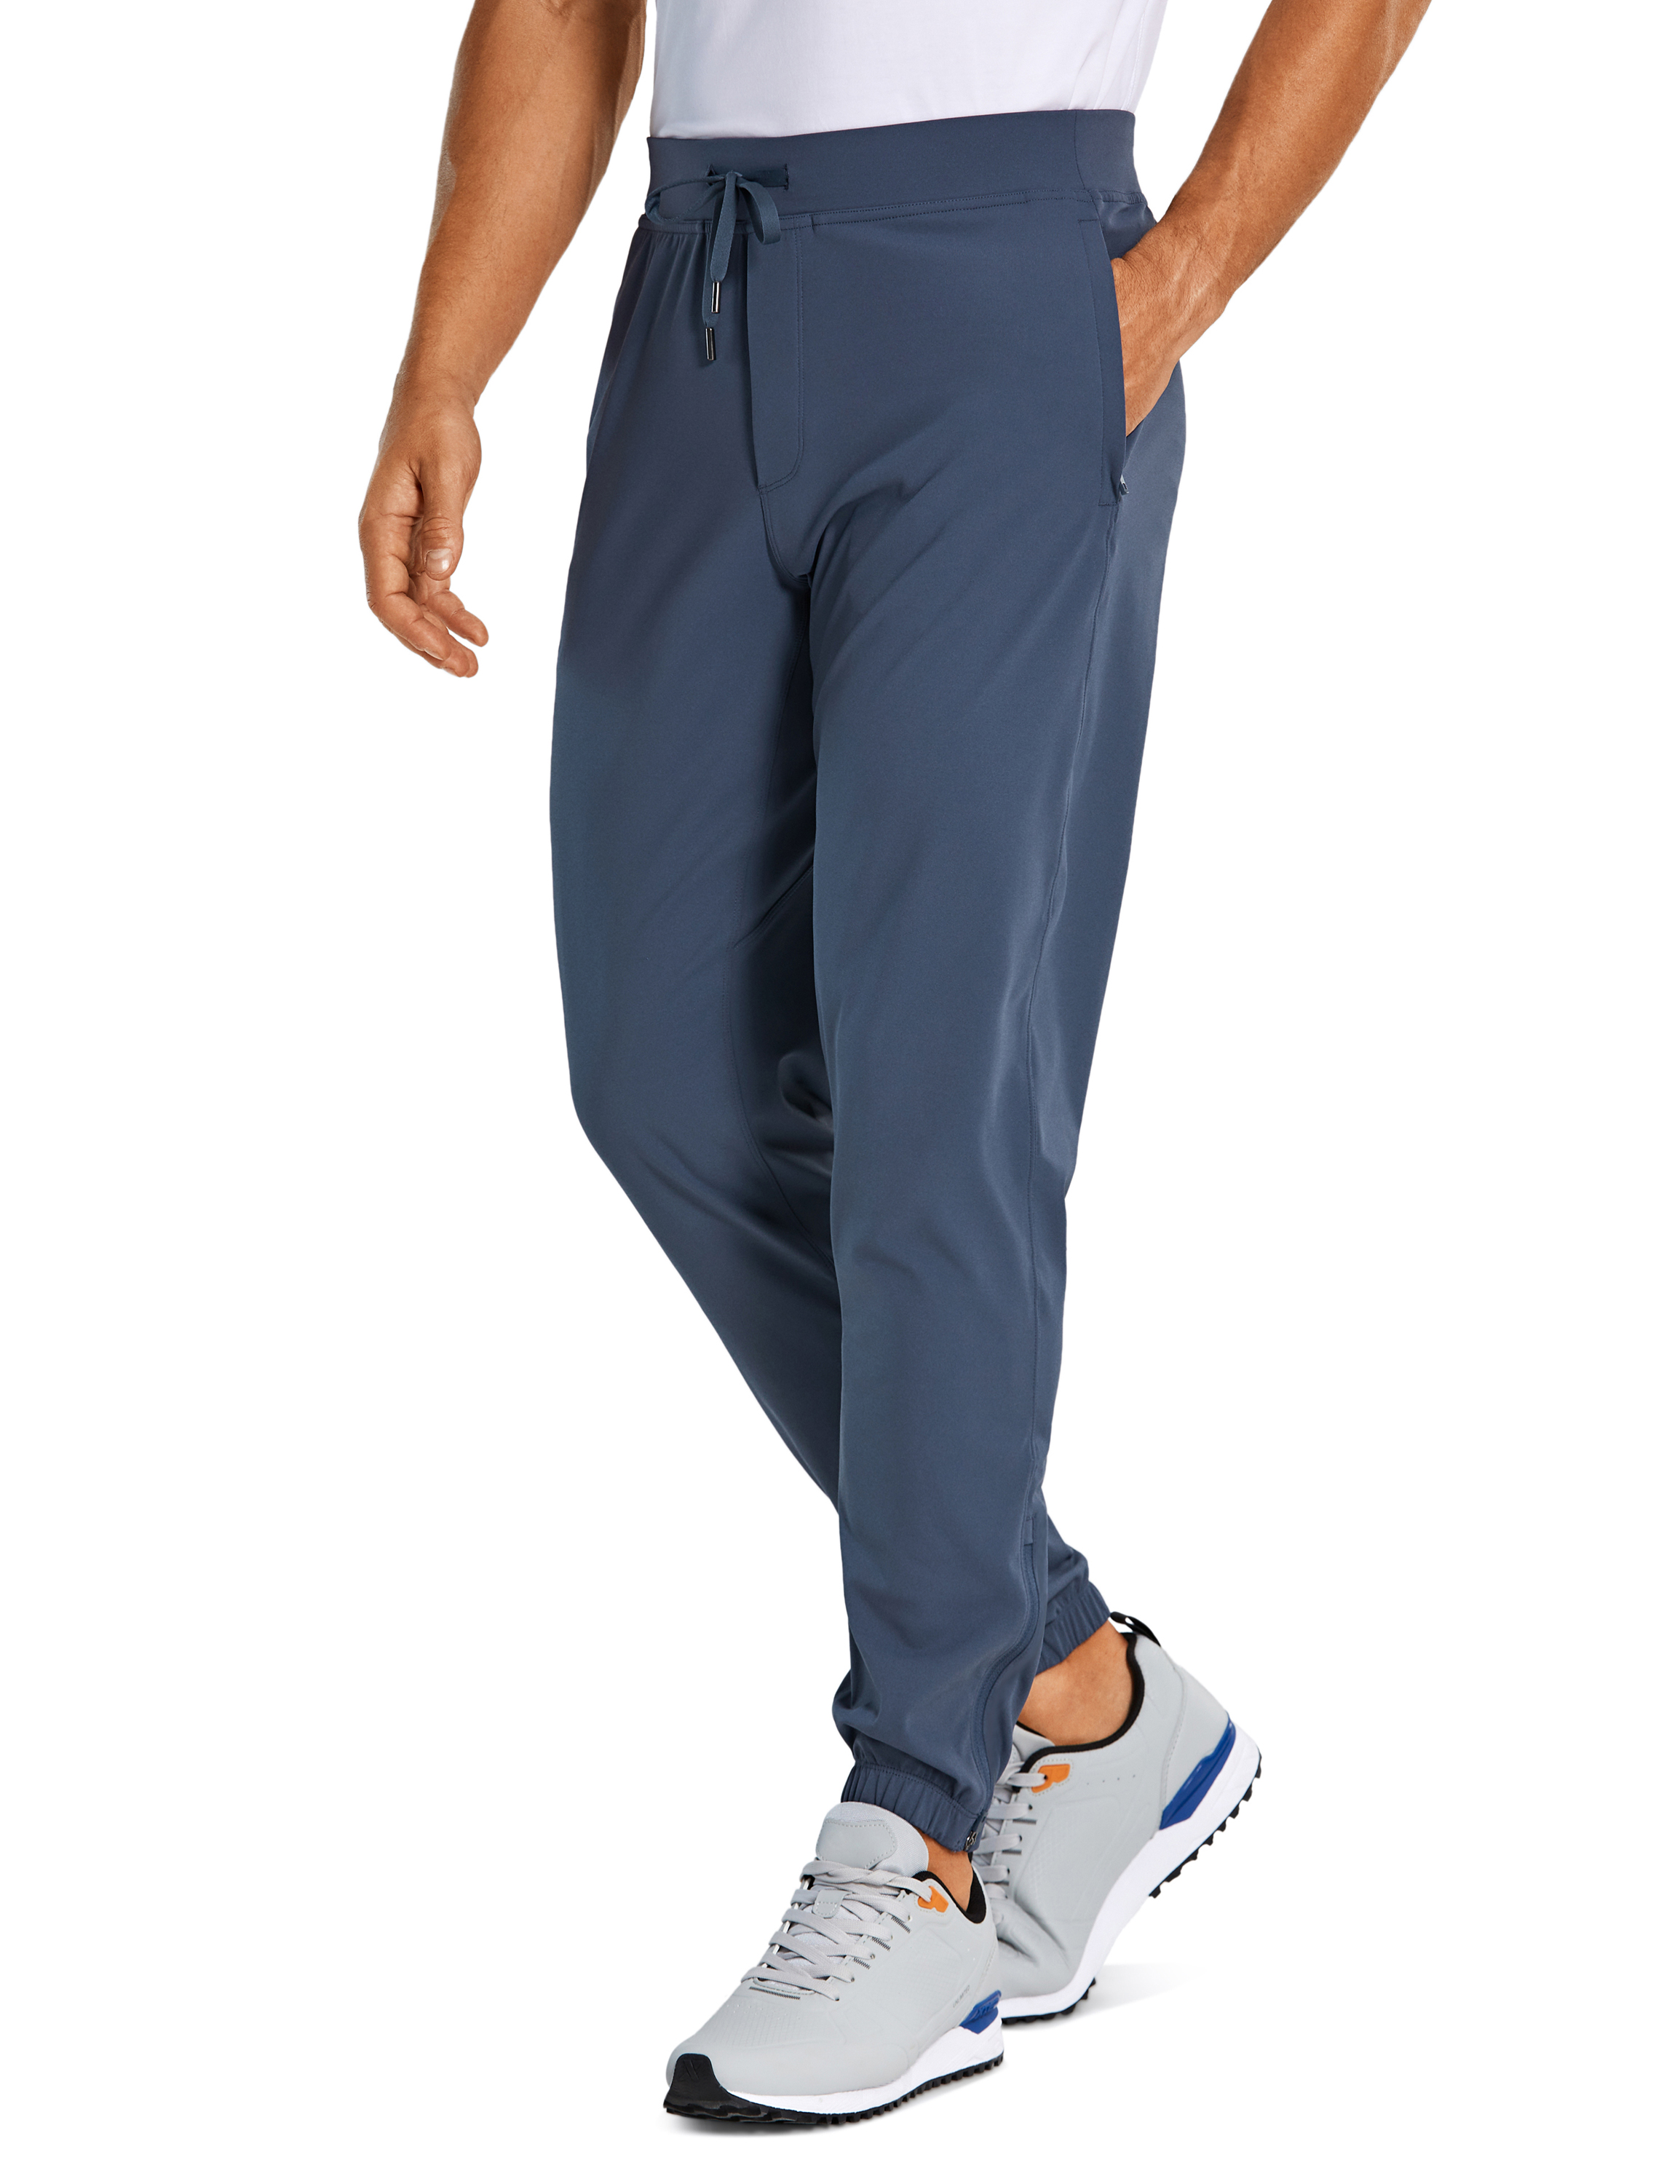 CRZ YOGA Men's Golf Joggers Pants, 30 Quick Dry Workout Pants